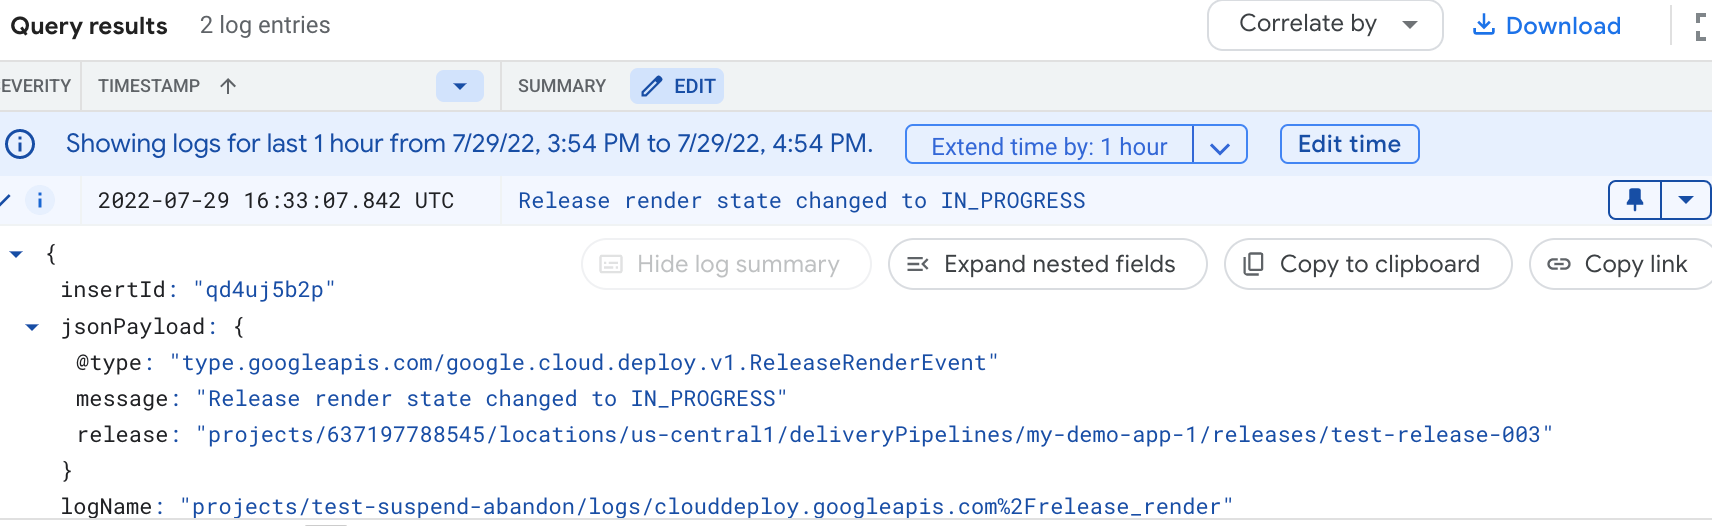 Contenuti di un log della piattaforma Google Cloud Deploy